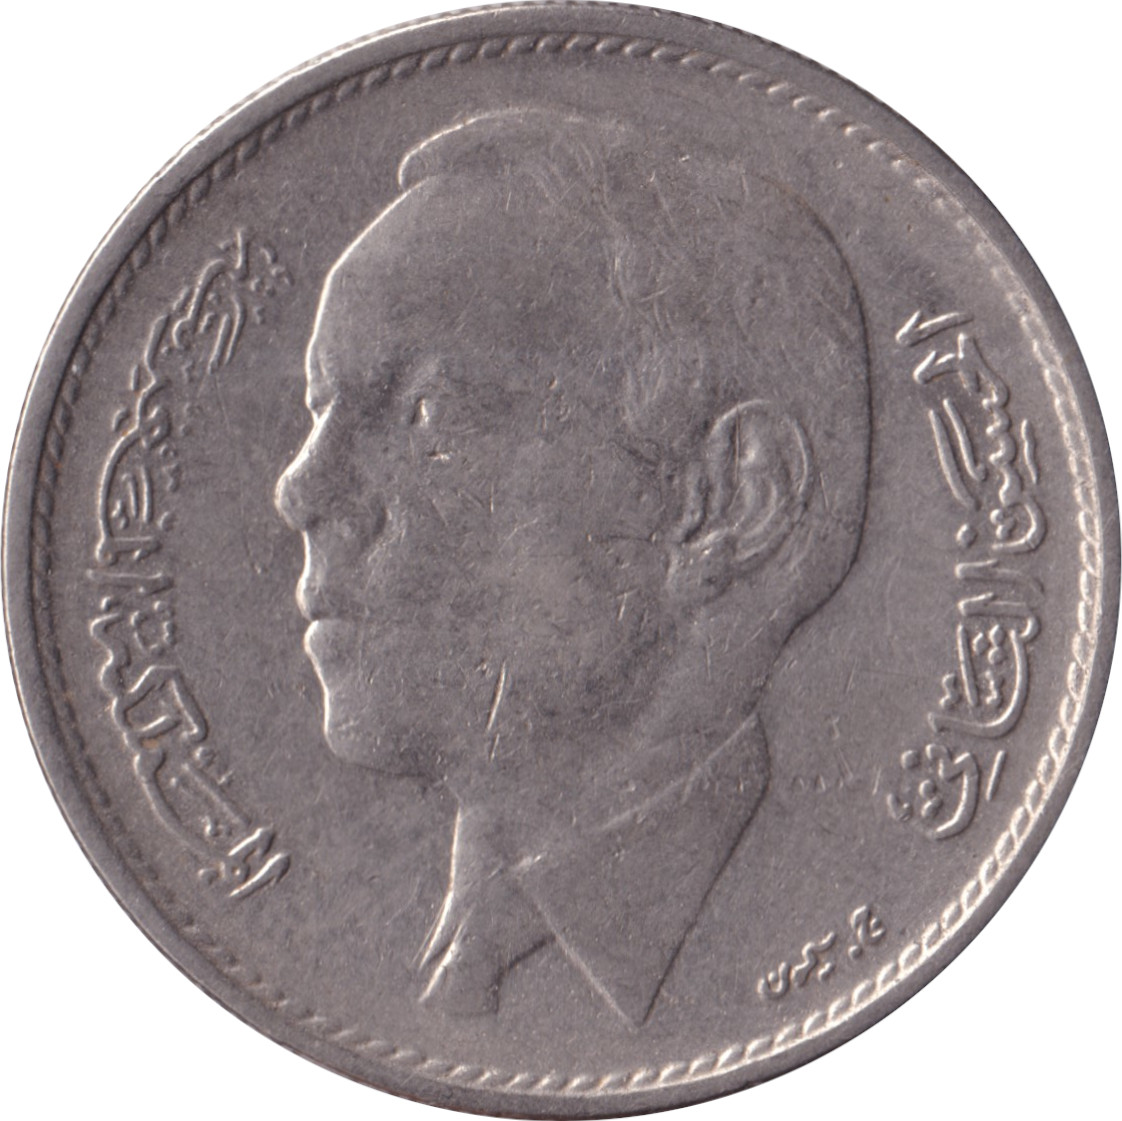 1 dirham - Hassan II - Nickel